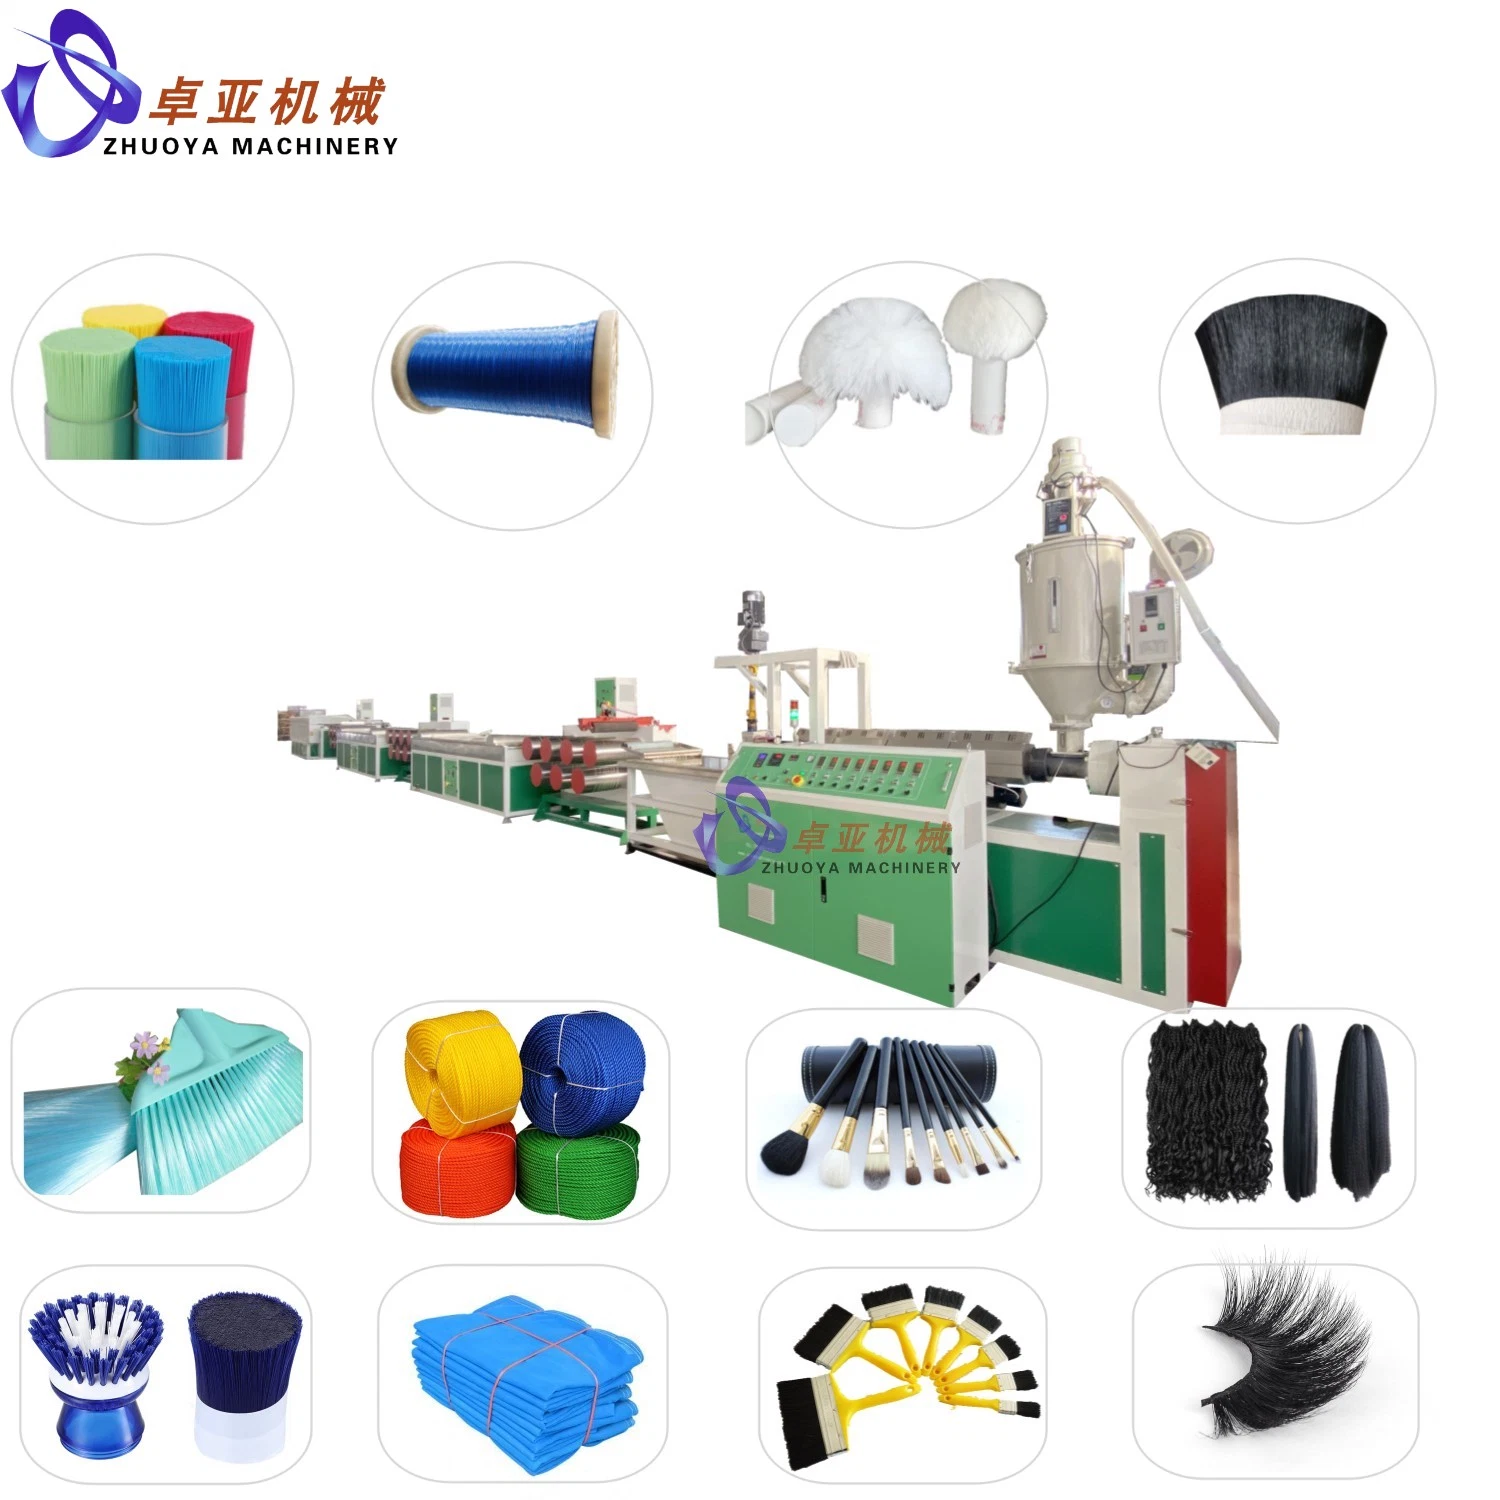 Máquina de expansão de Monofilamento de plástico China Famous Pet/PP/PE/PA/PBT para vassoura/escova/corda/rede/cabelo sintético/sintético Fabricante de estelas10-year de fibra de pálpebra